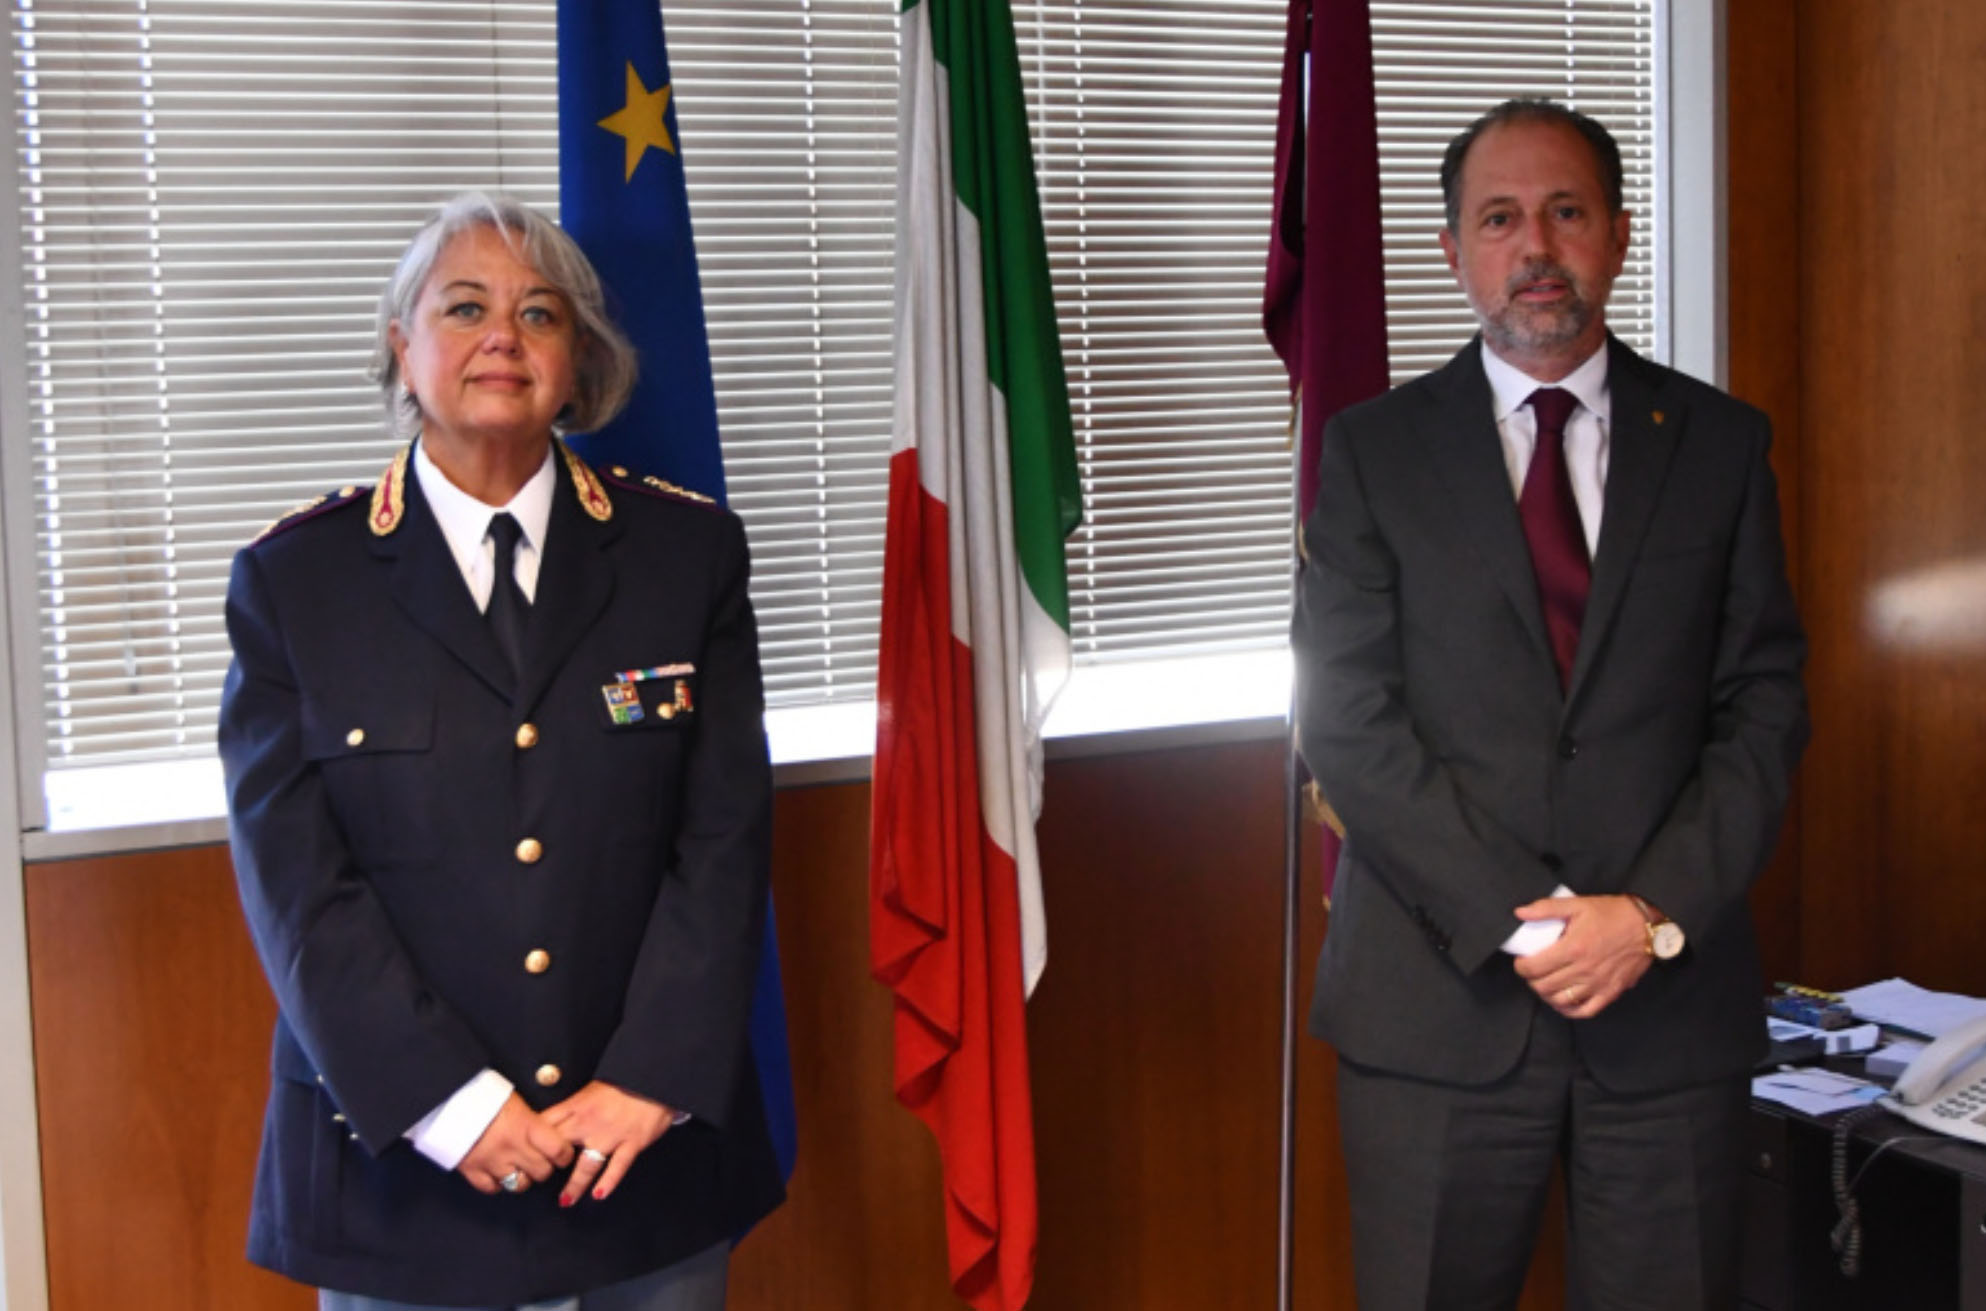 La Dott.ssa Maria Rita Mammone ha assunto la direzione della Divisione Polizia Amministrativa, Sociale e dell’Immigrazione della Questura aretina